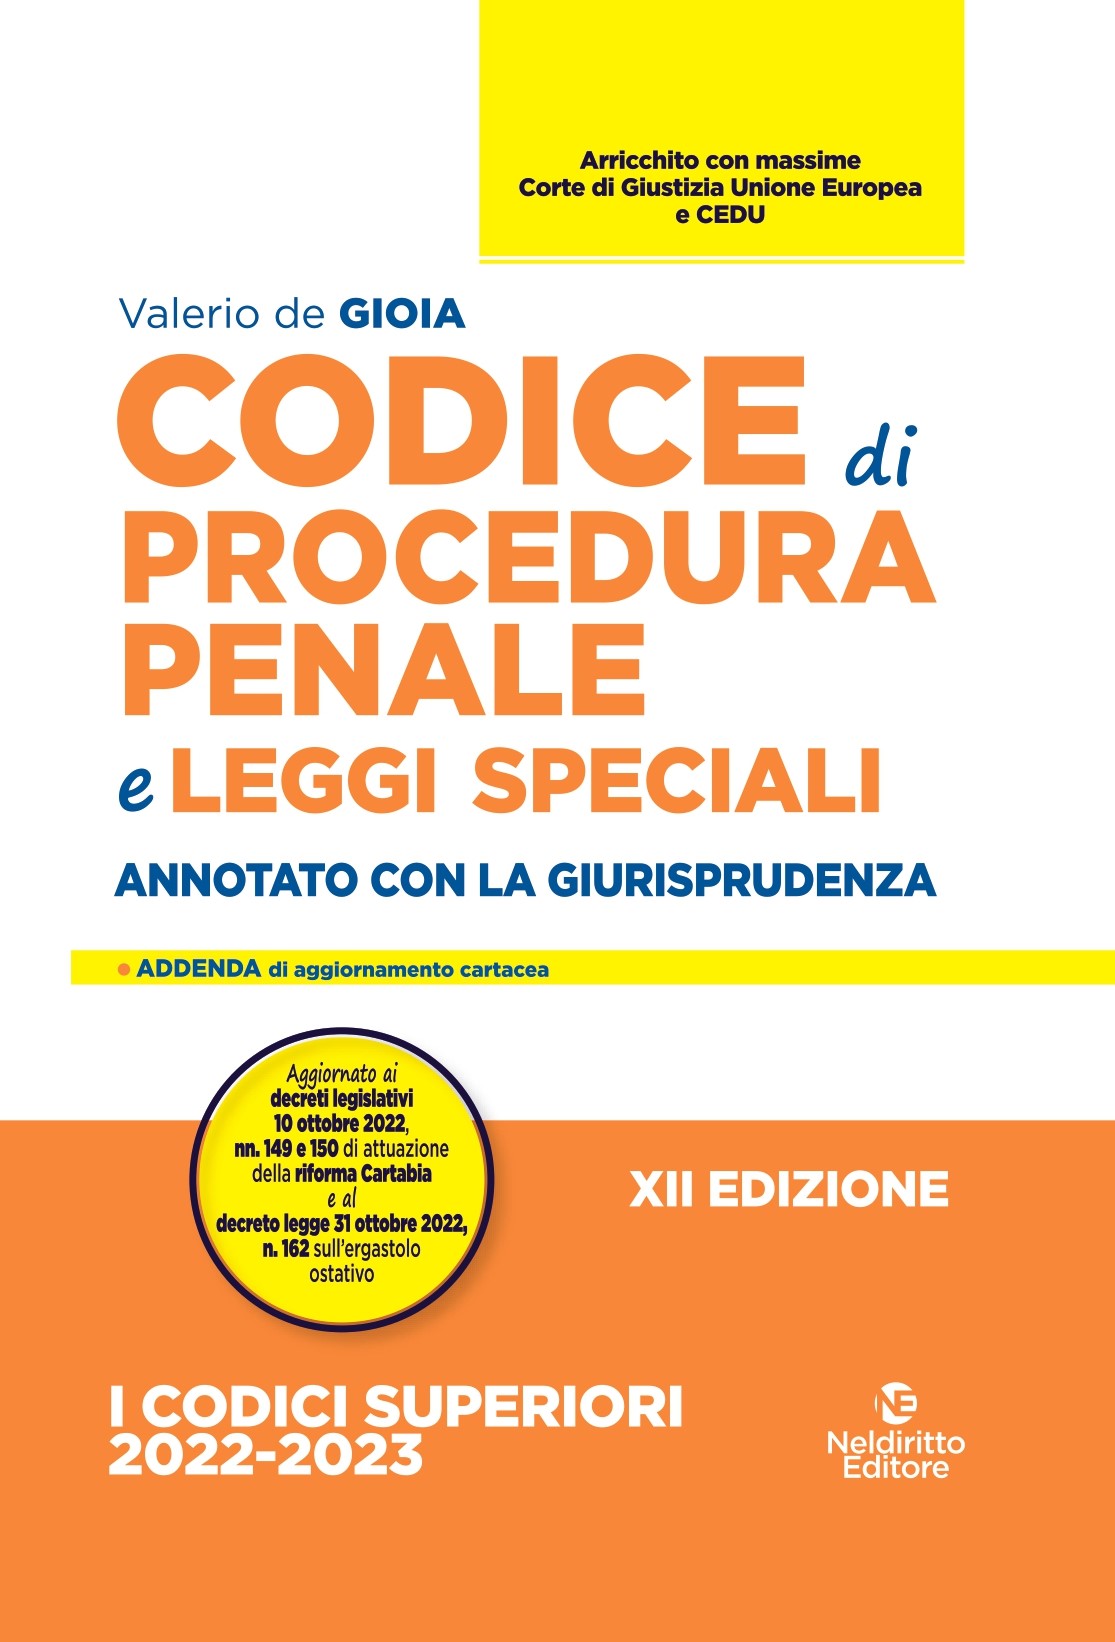 Codice Di Procedura Penale E Leggi Speciali - Annotato Con La Giurisprudenza 2022 -23. Per l'Orale rafforzato